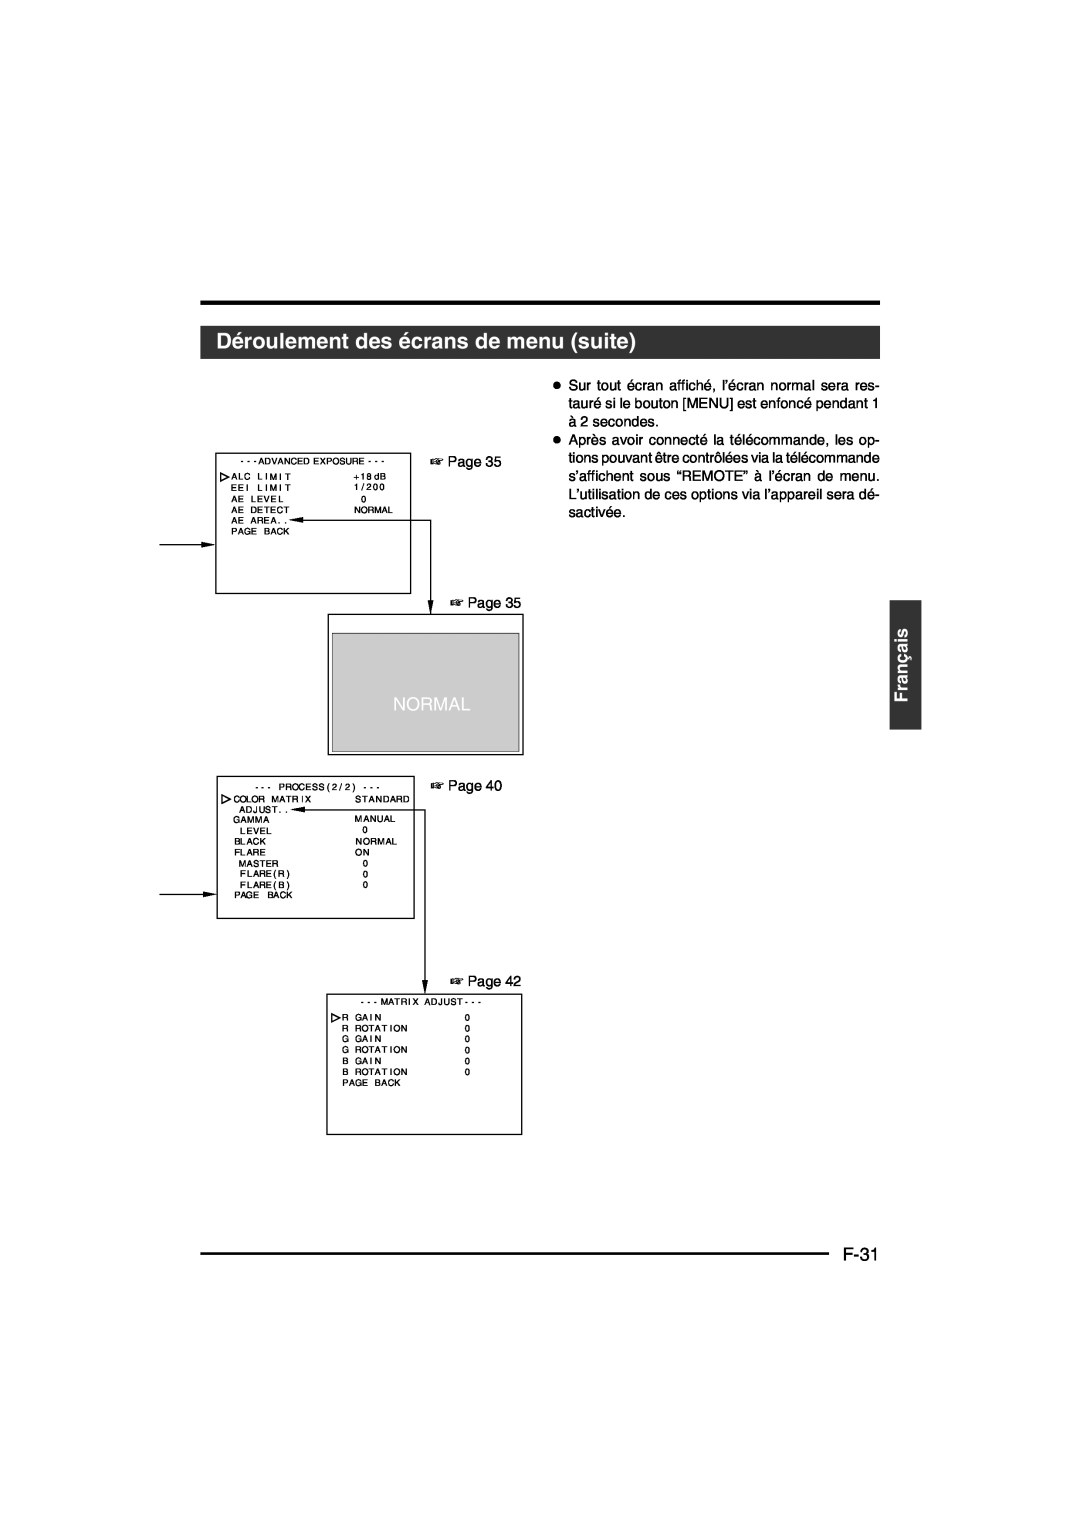 JVC KY-F550E instruction manual Déroulement des écrans de menu suite, F-31, Normal, Français 